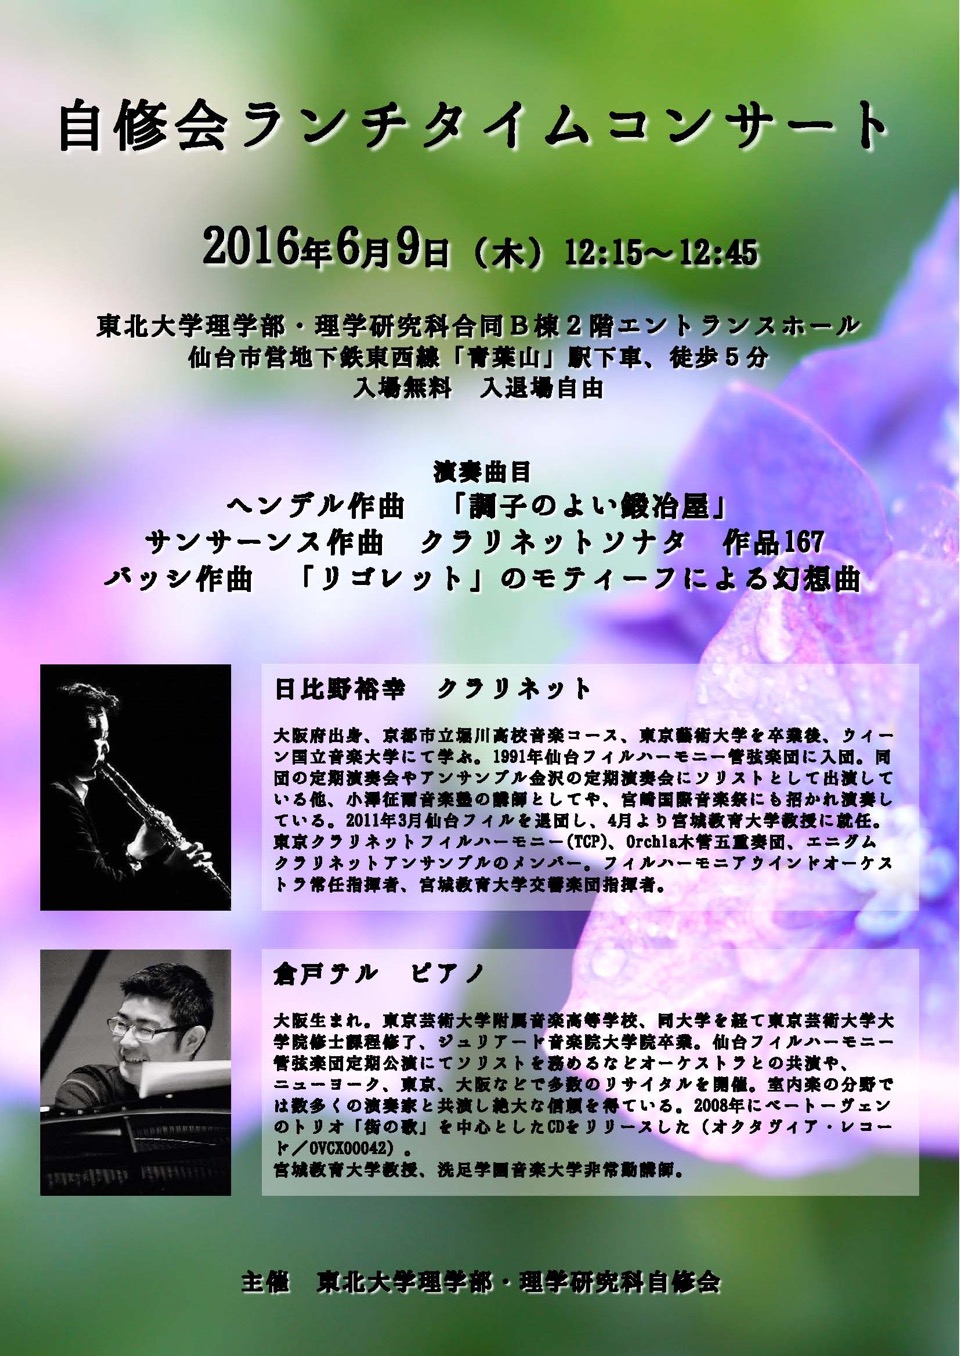 2016.6.9.自修会コンサートポスター(A4修正版)